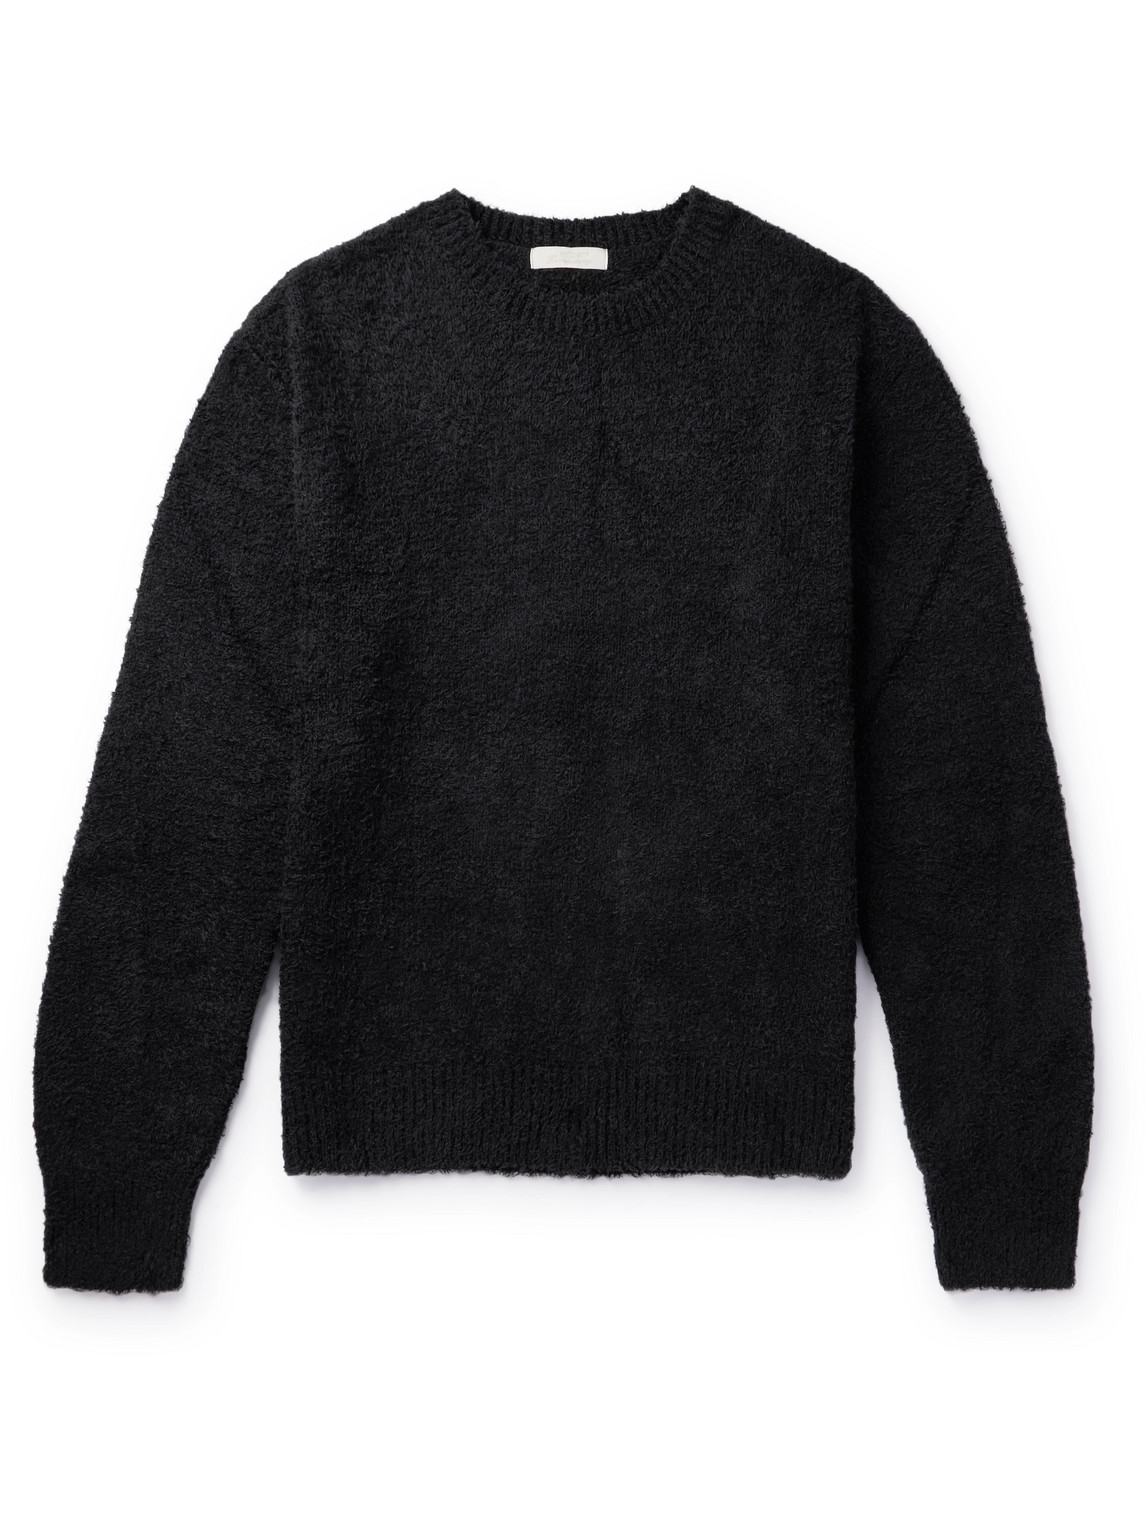 Mfpen Black Furry Sweater In Furry Black